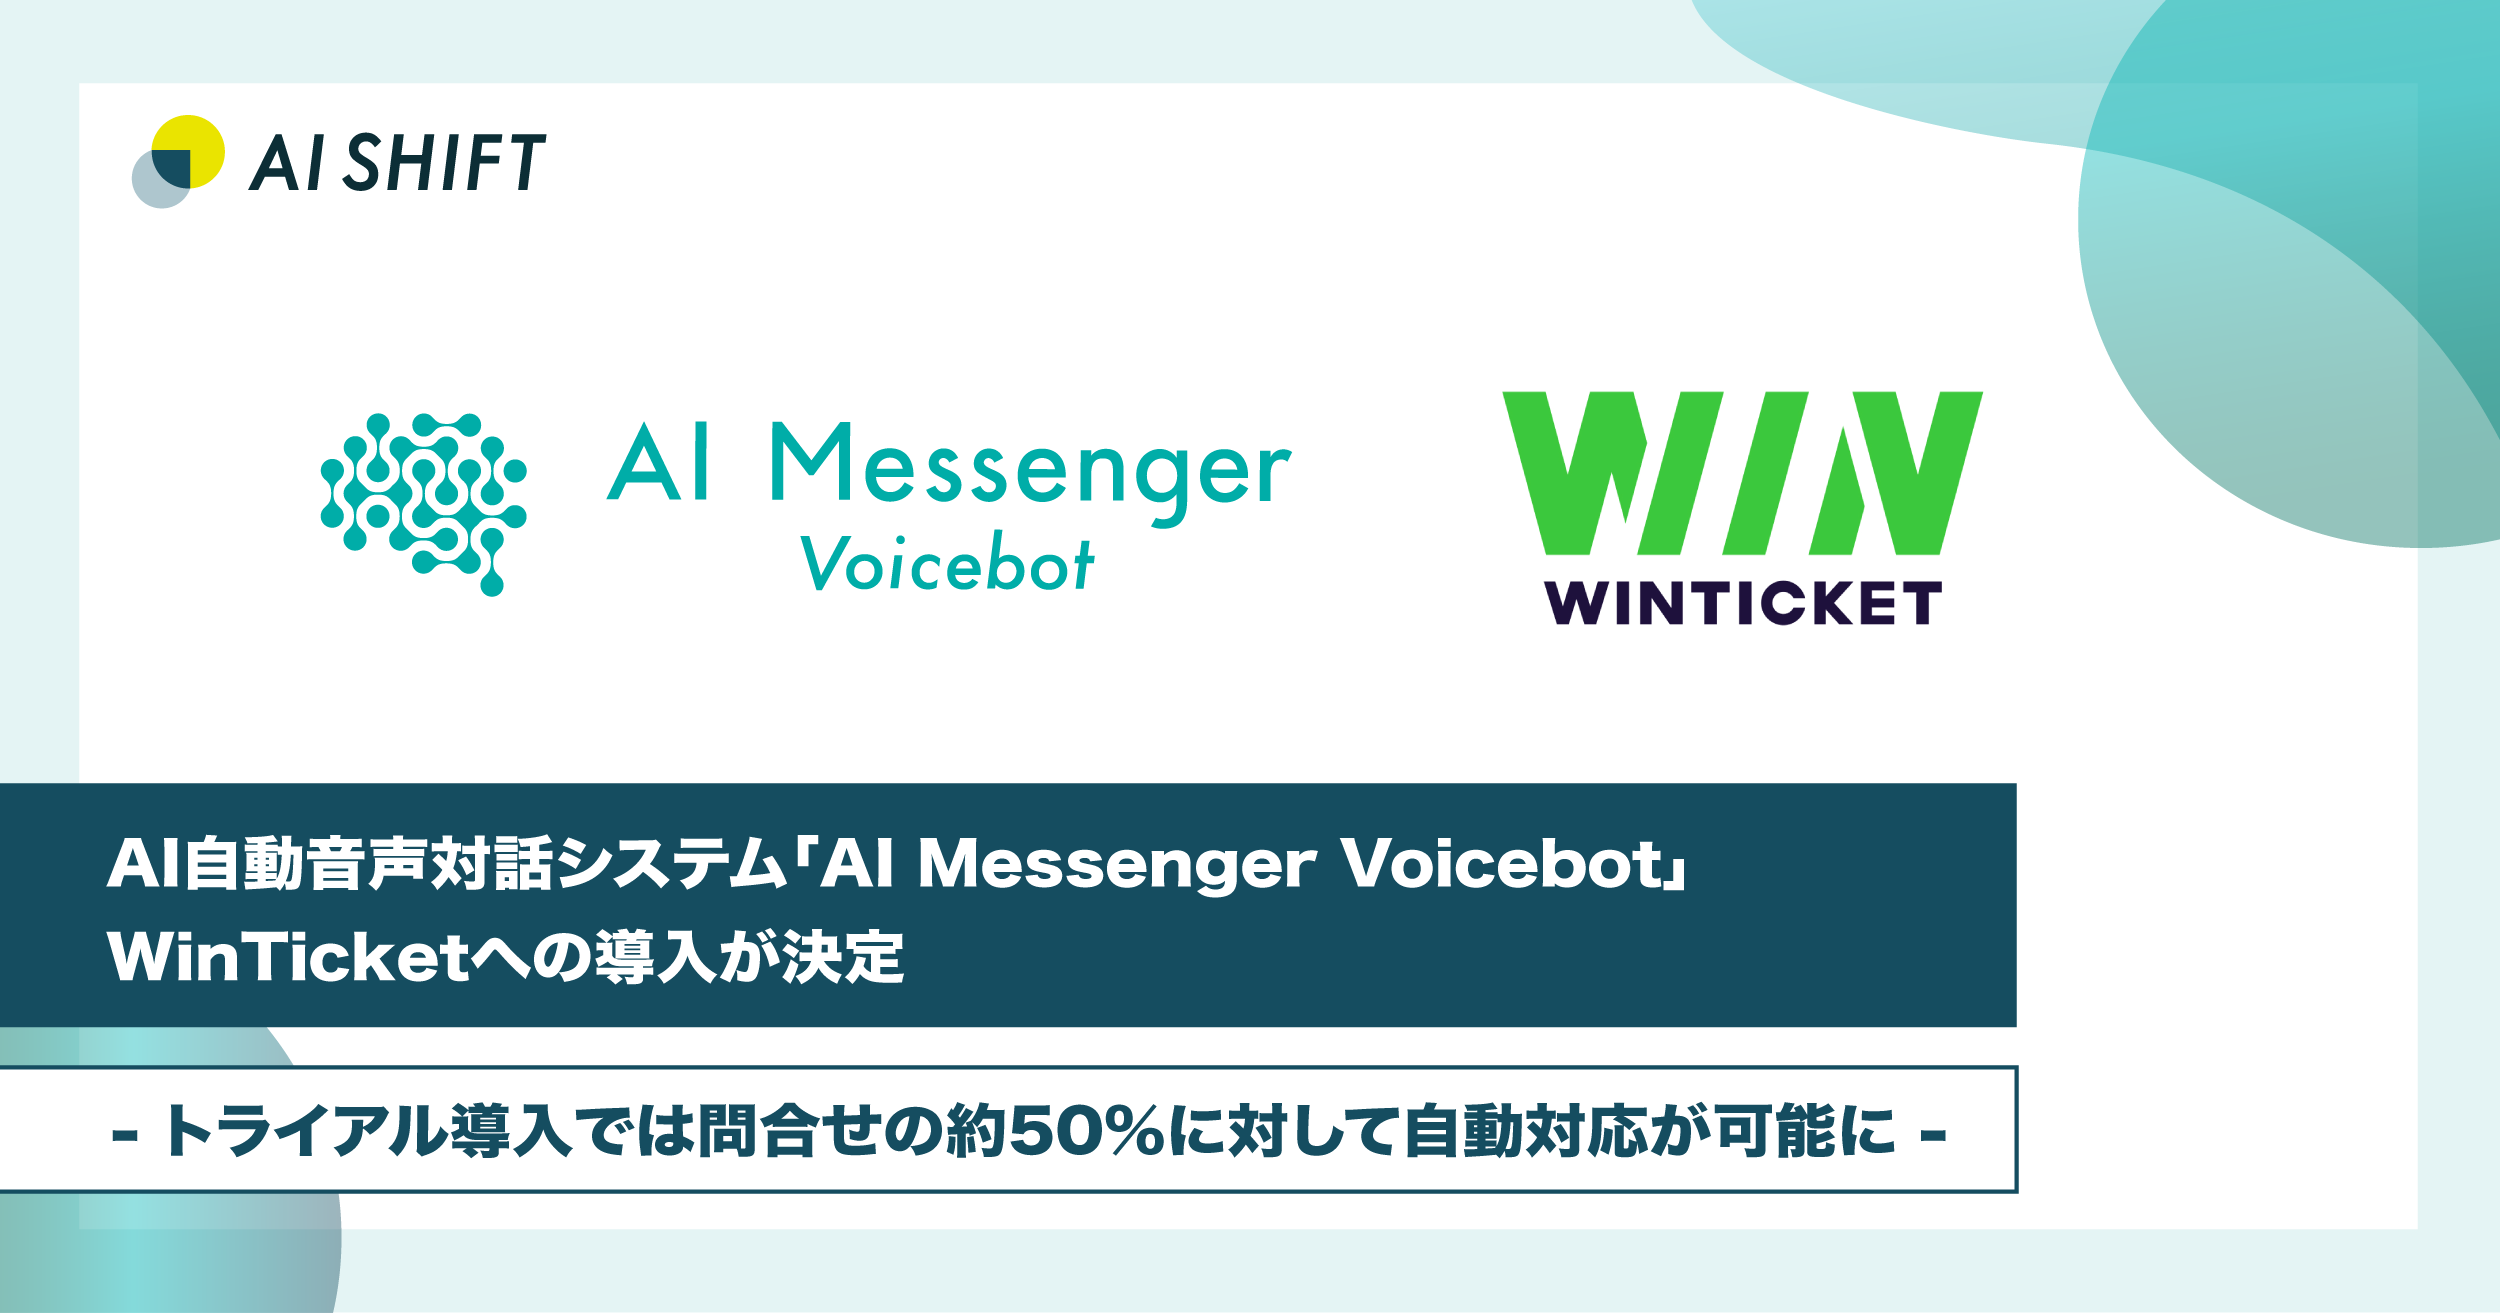 AI自動音声対話システム「AI Messenger Voicebot」、WINTICKETへの導入が決定 -トライアル導入では問合せの約50%に対して自動対応が可能に-